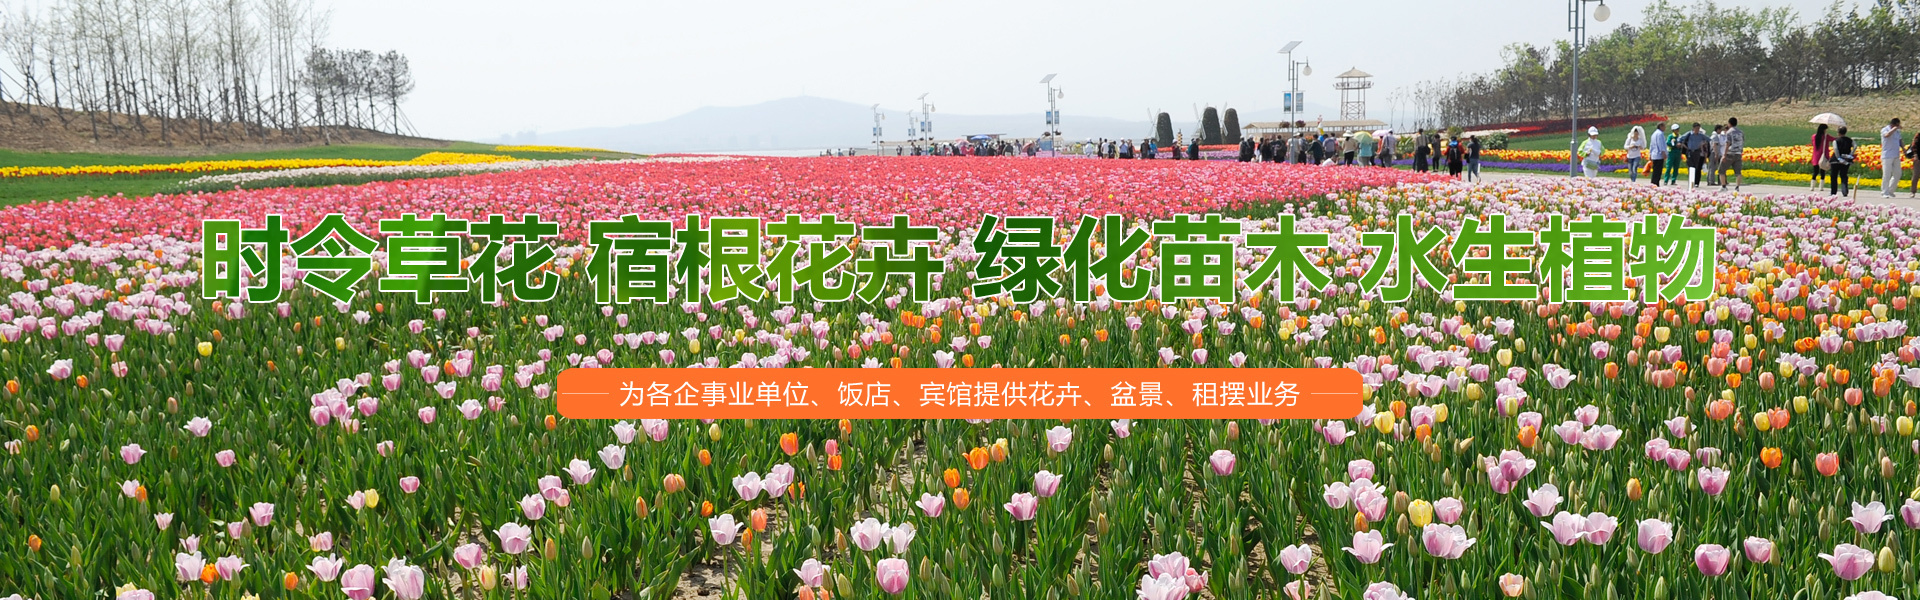 青州市海森花卉苗木有限公司